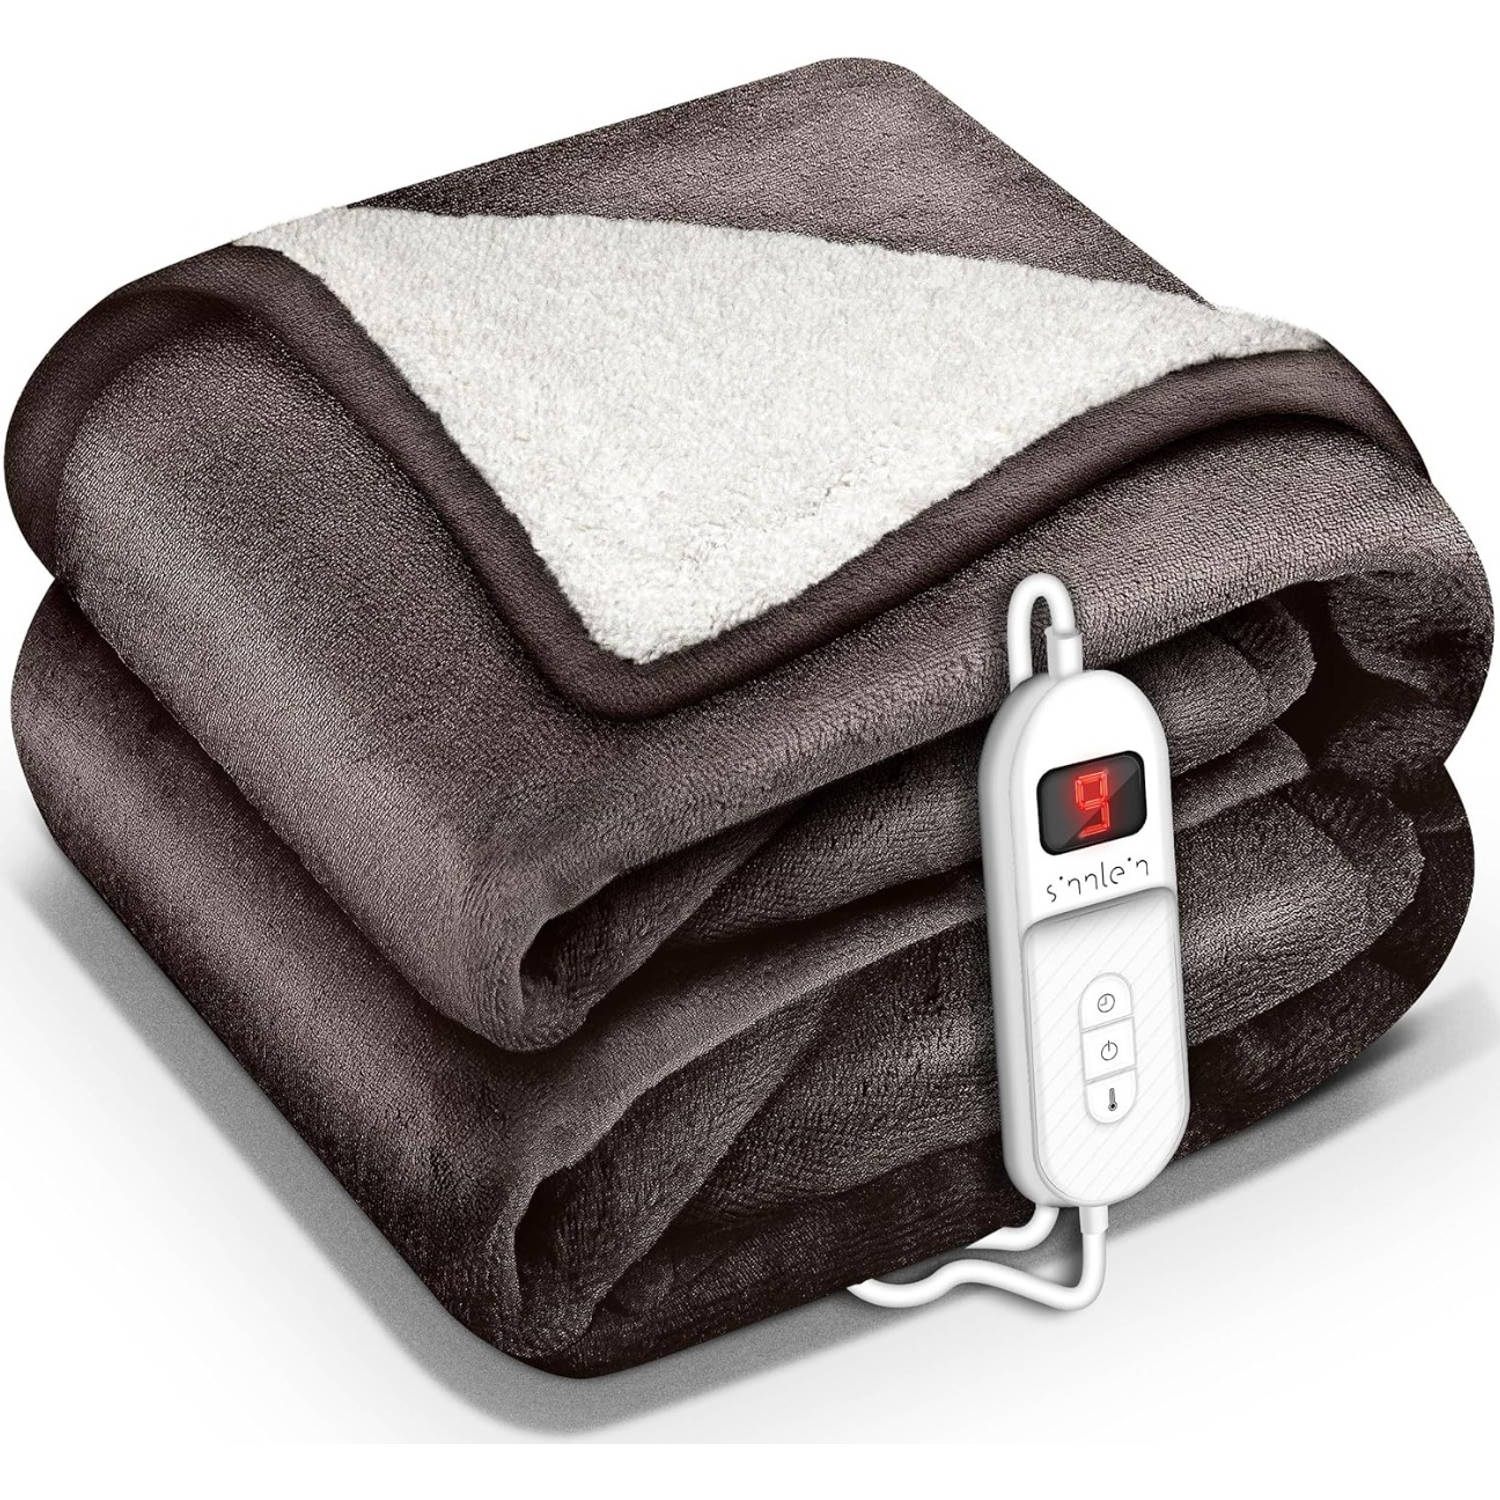 Sinnlein- Elektrische deken met automatische uitschakeling, bruin, 160x120 cm, warmtedeken met 9 tem